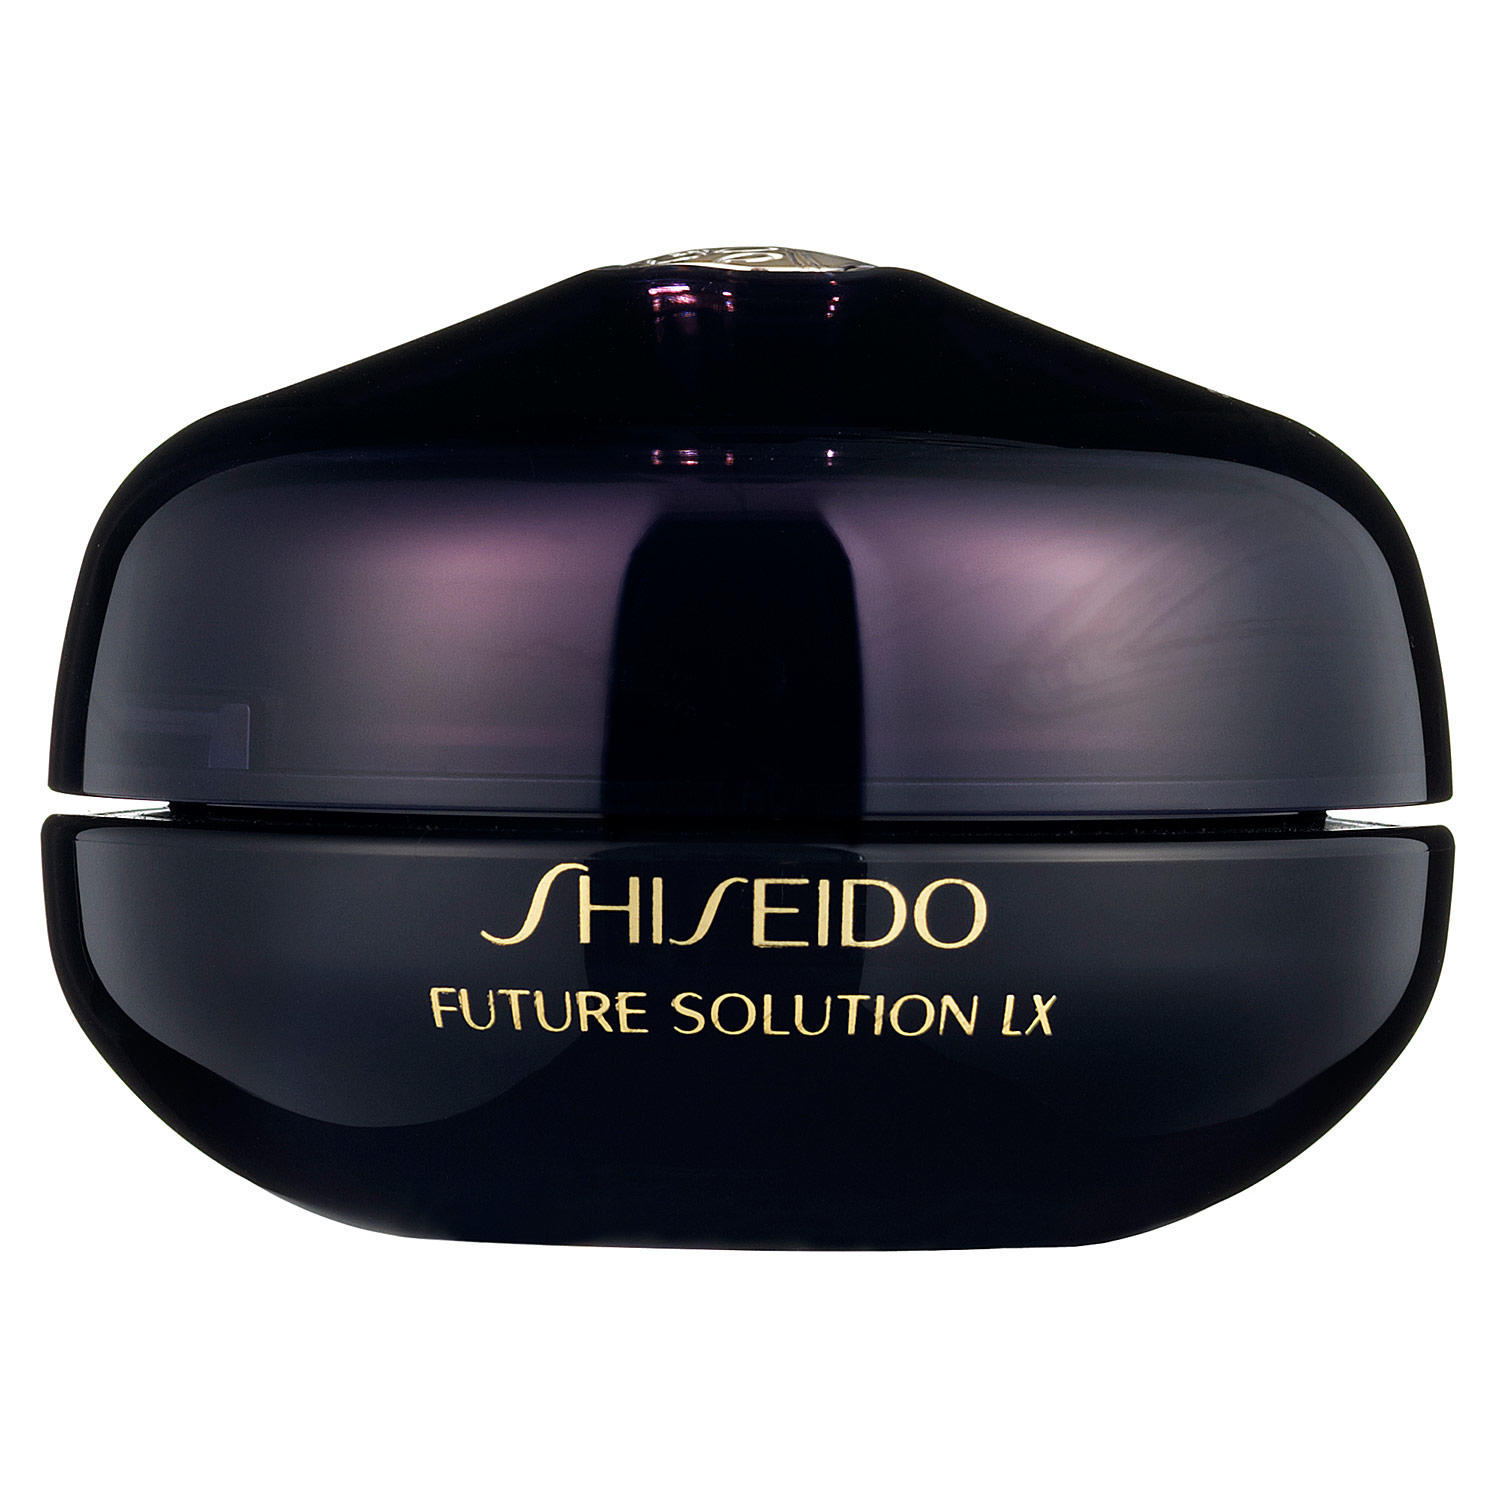 Shiseido lx